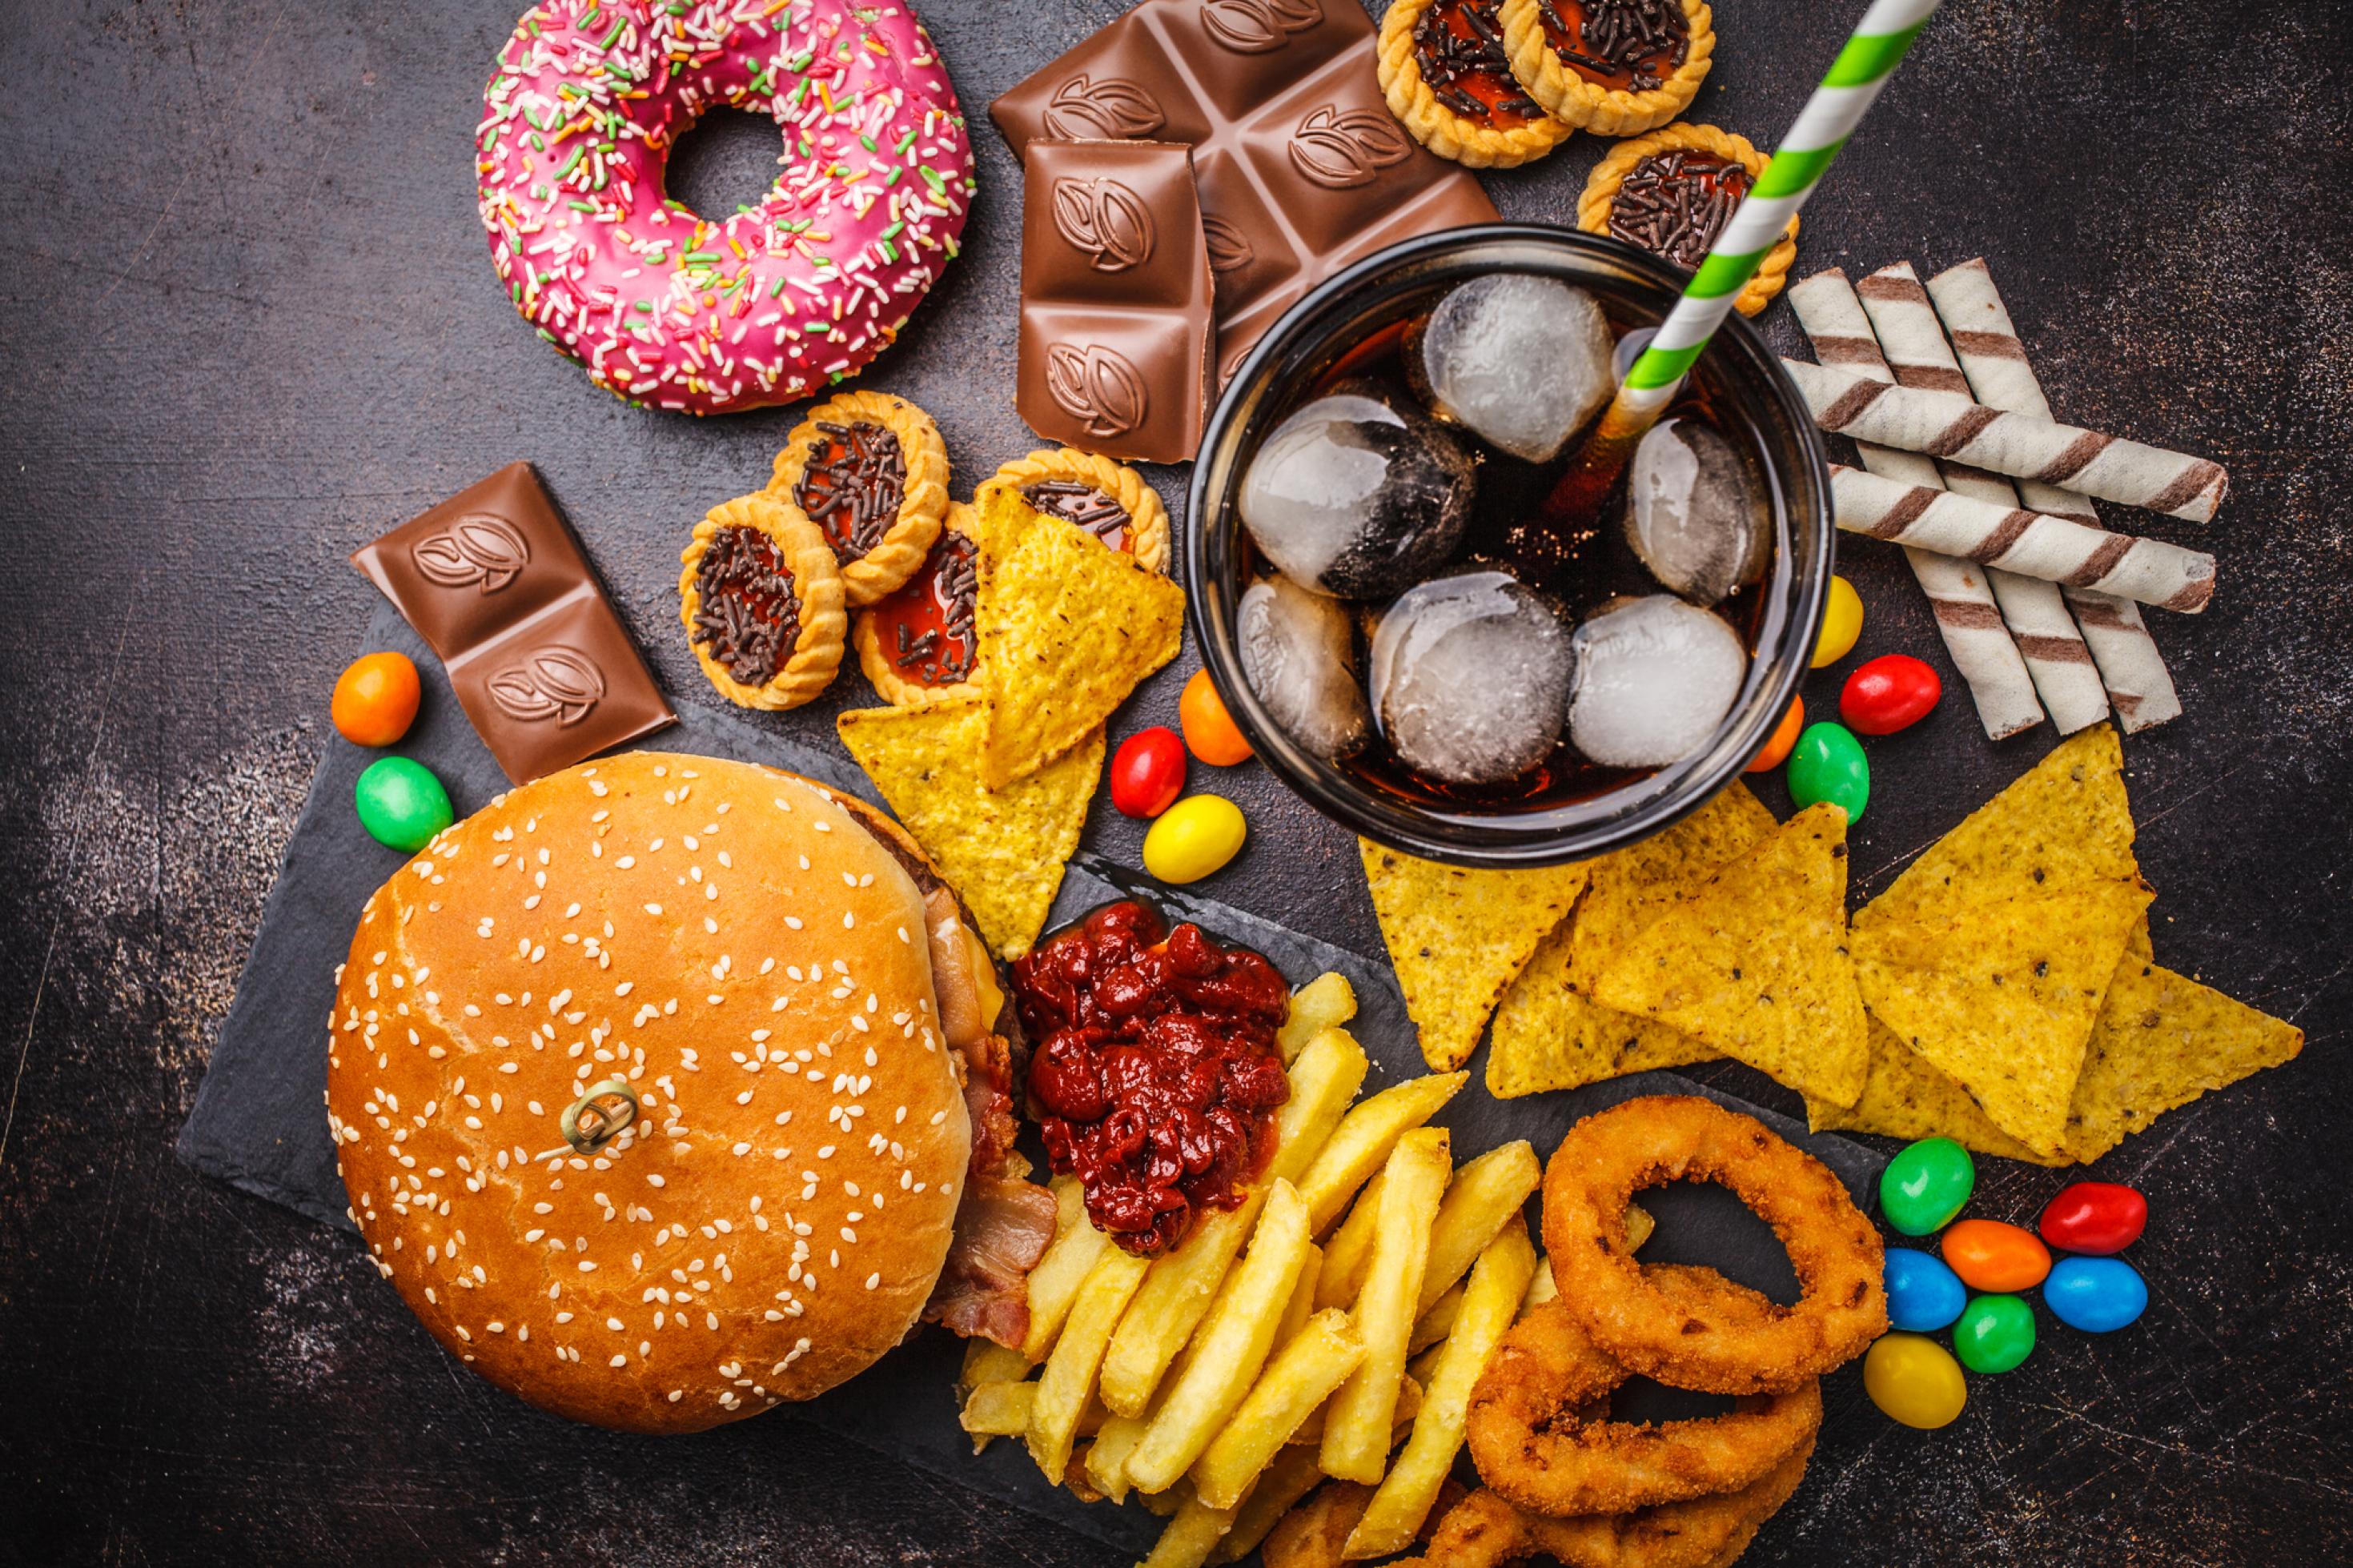 Draufsicht: Verschiedene Junk Food Produkte wie Burger, Süßigkeiten, Chips, Schokolade, Donuts, Soft Drinks – fotografiert auf schwarzer Tischplatte.